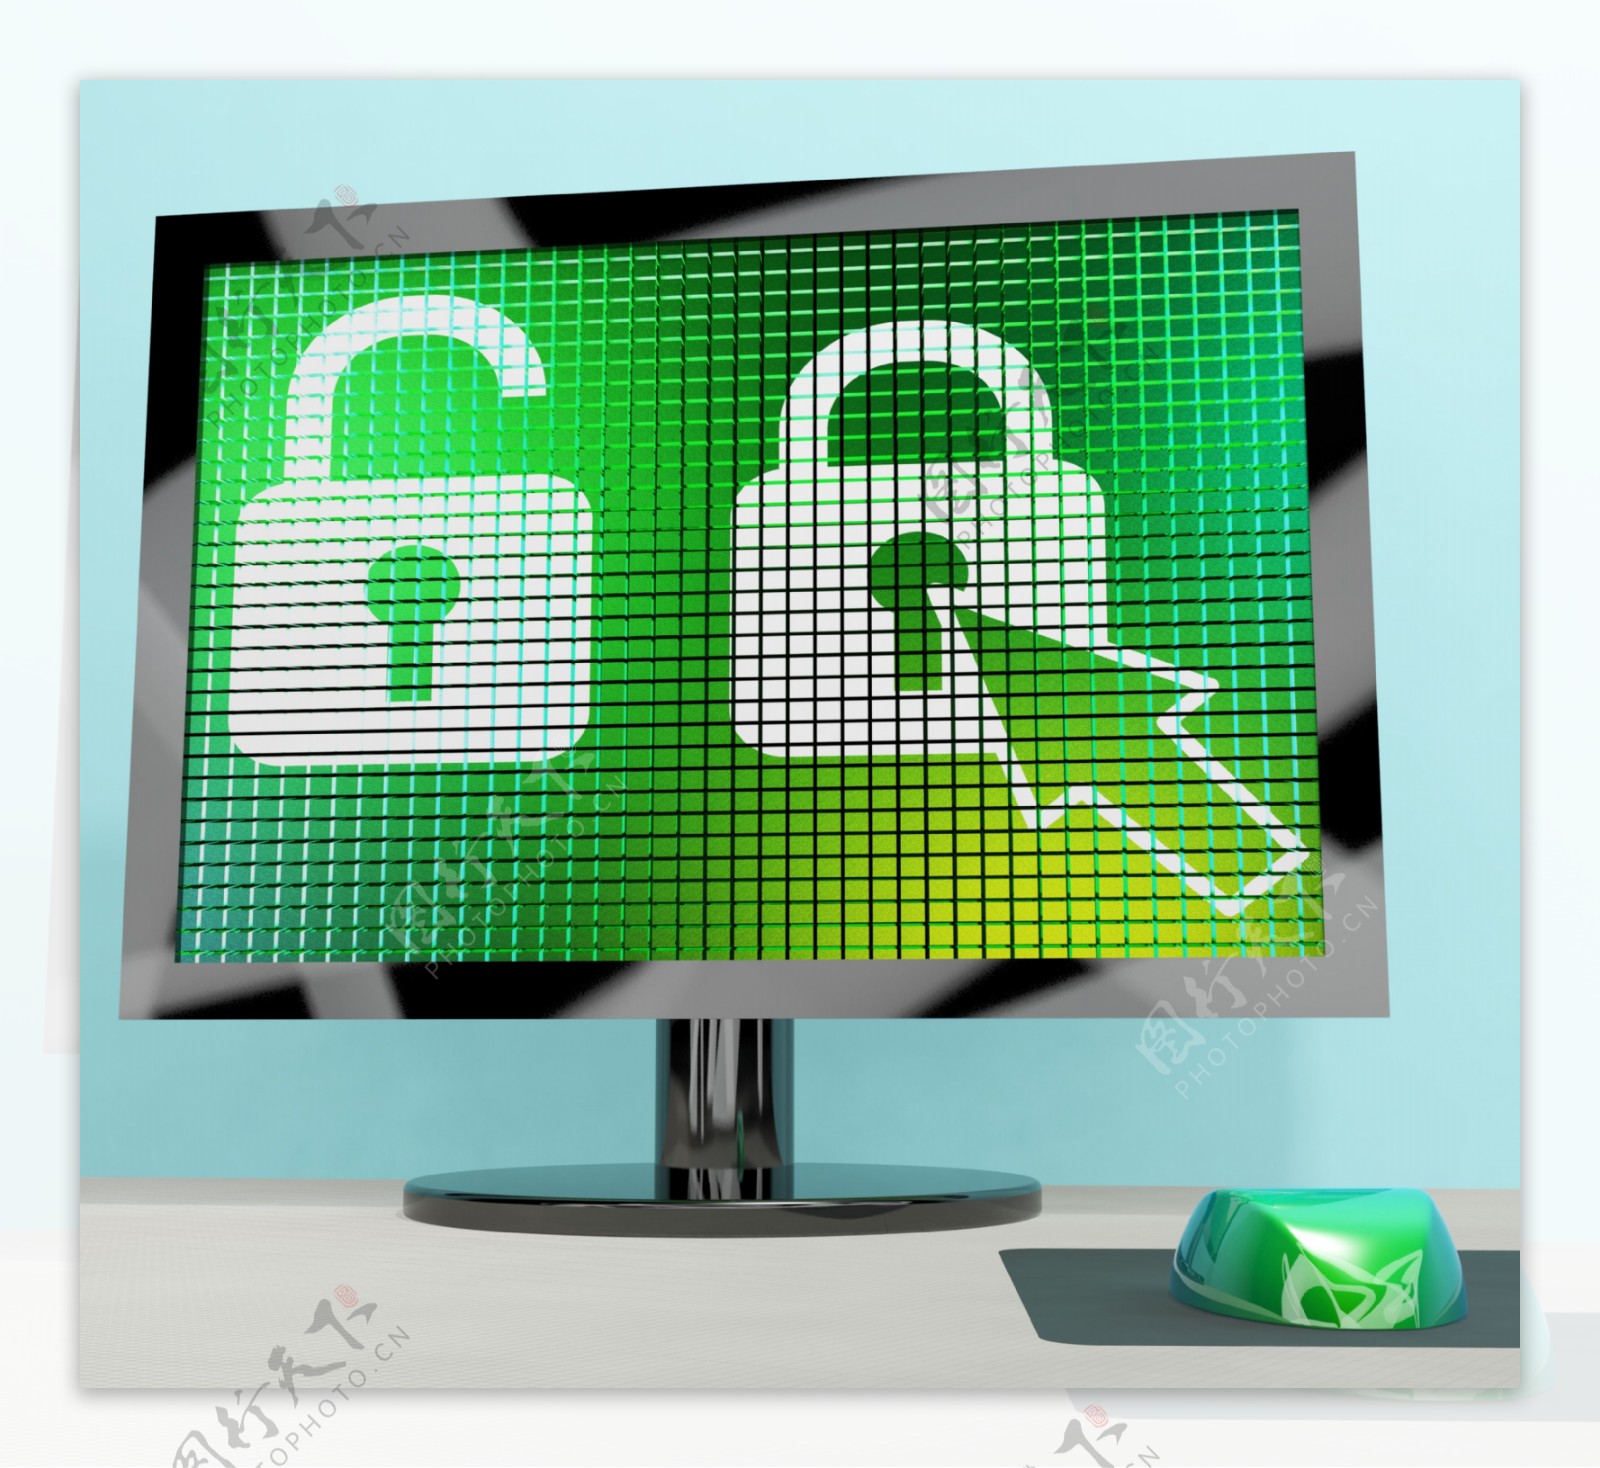 挂锁图标在计算机屏幕上显示的安全保障和保护